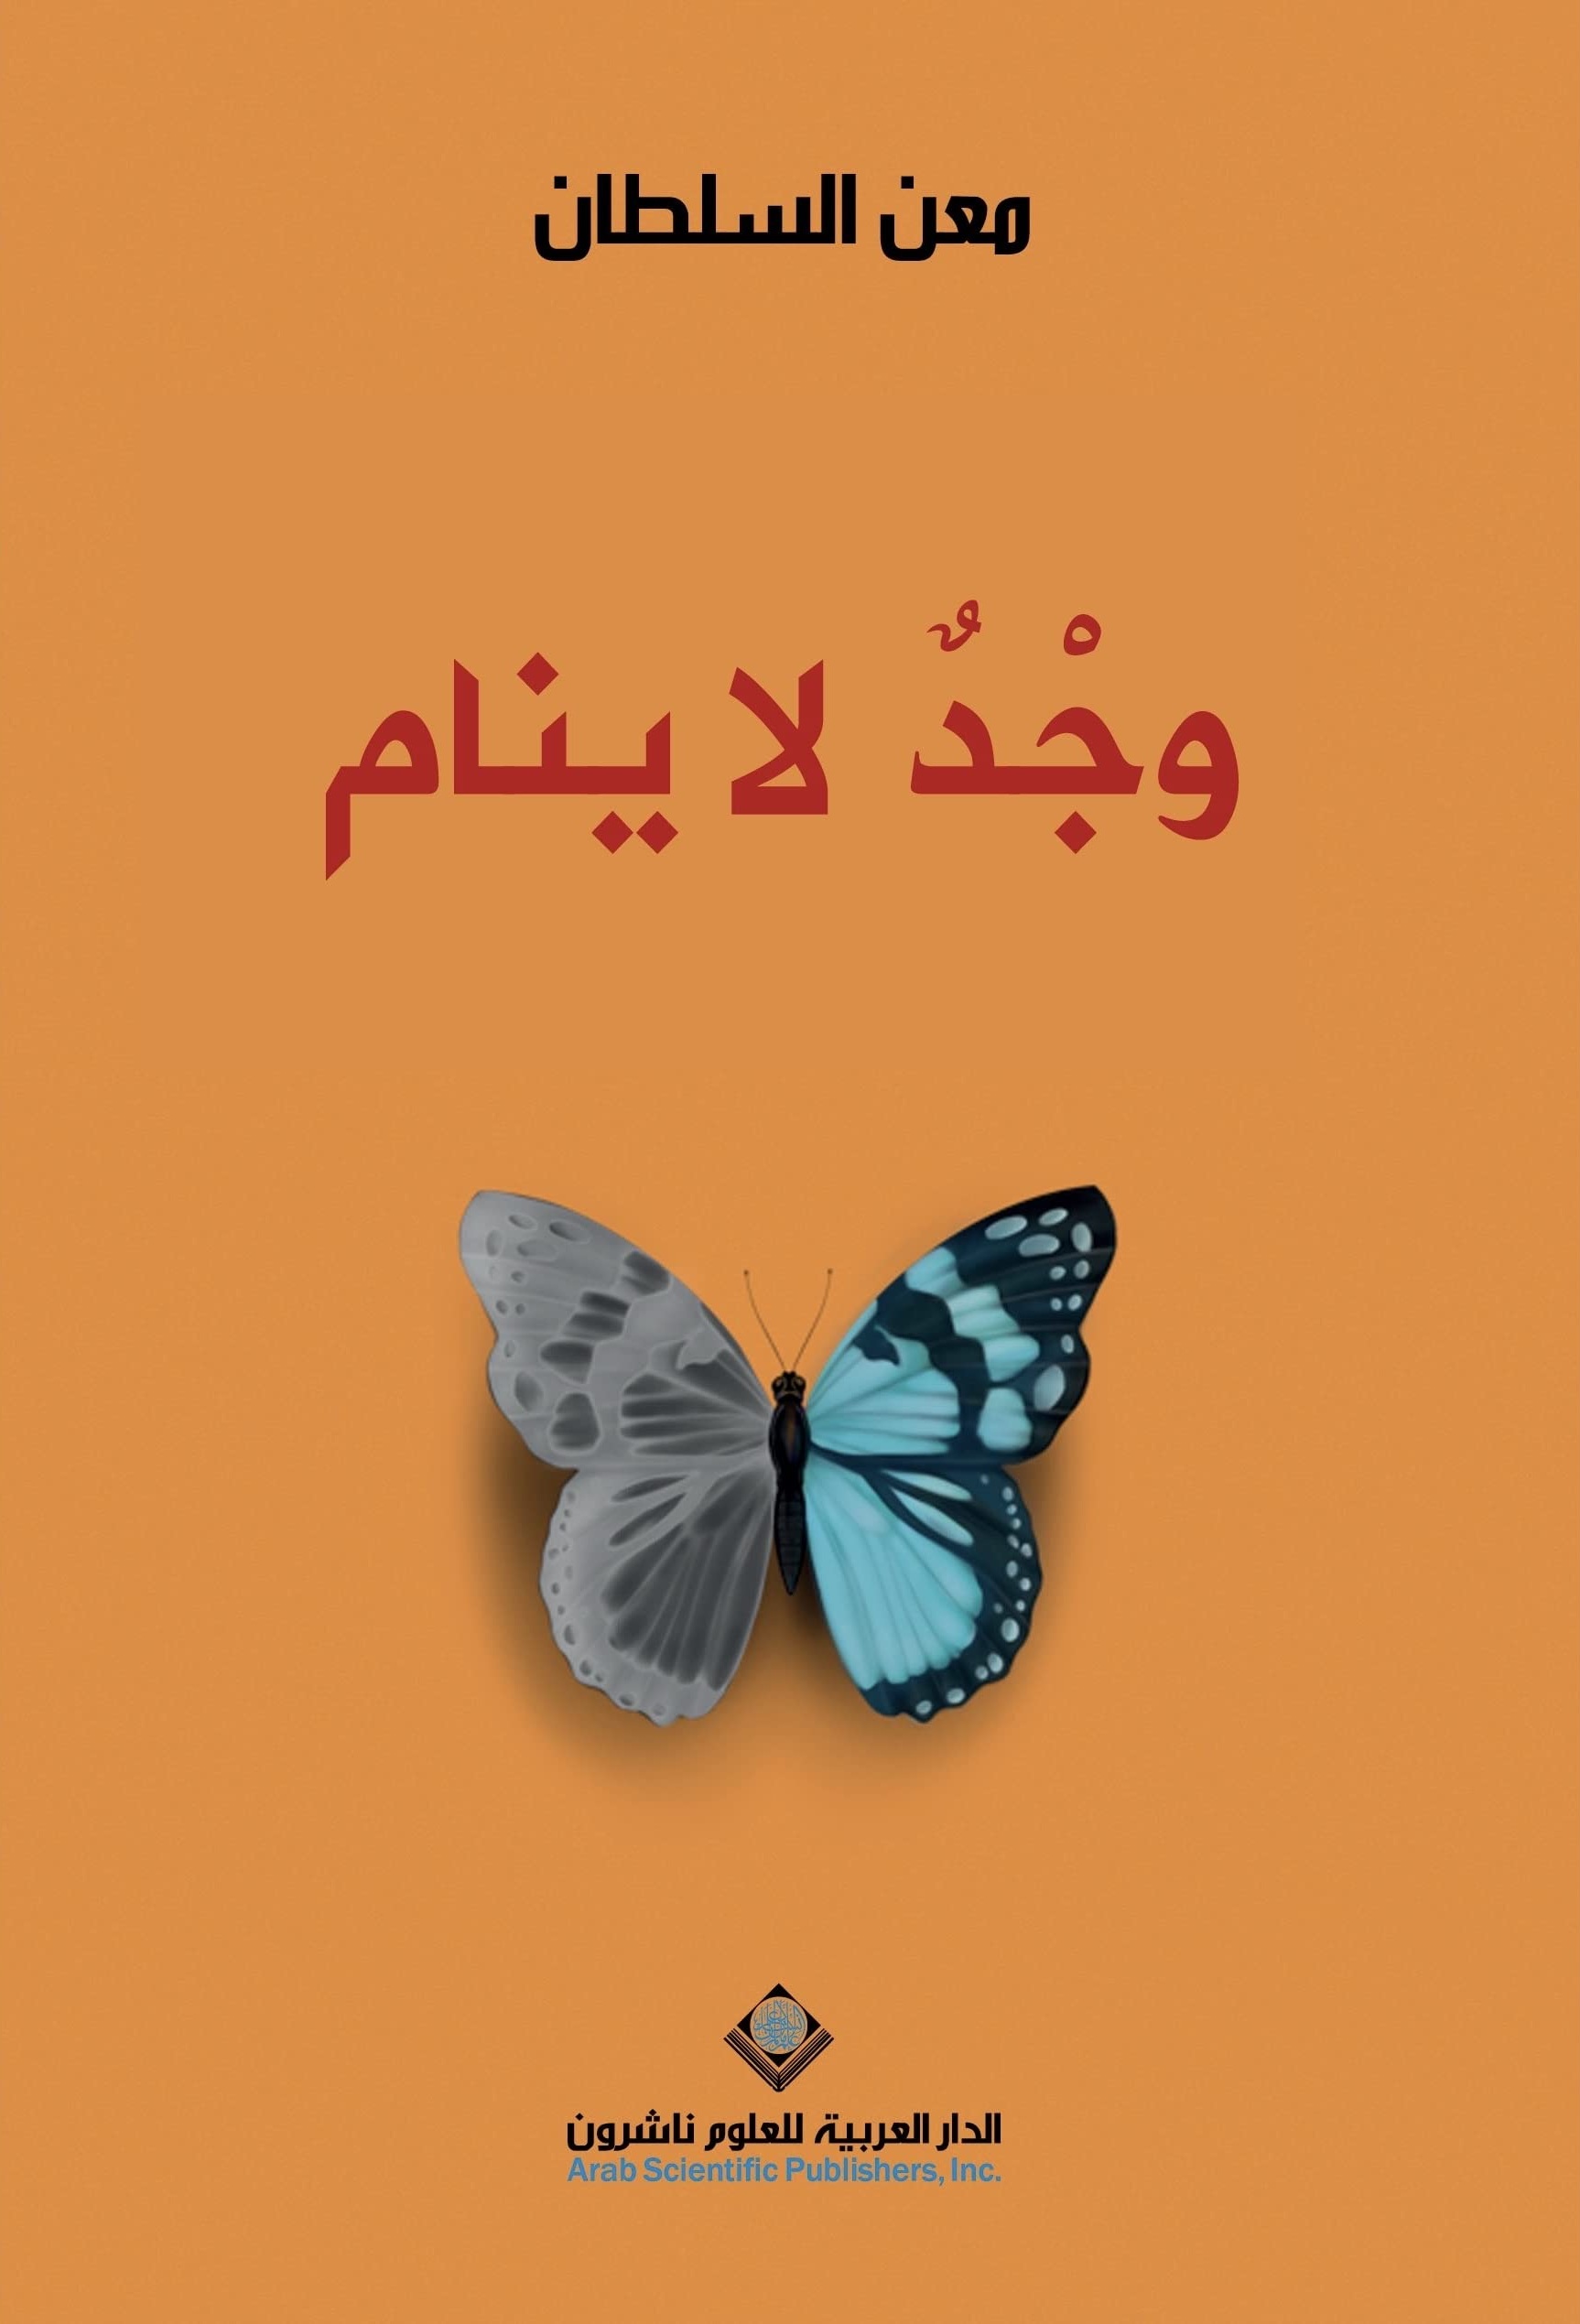 كتاب السيرة الذاتية وجد لا ينام تأليف معن السلطان - أفضل كتب السيرة الذاتية لمجموعة من أبرز شخصيات الوطن العربي خلال 2020